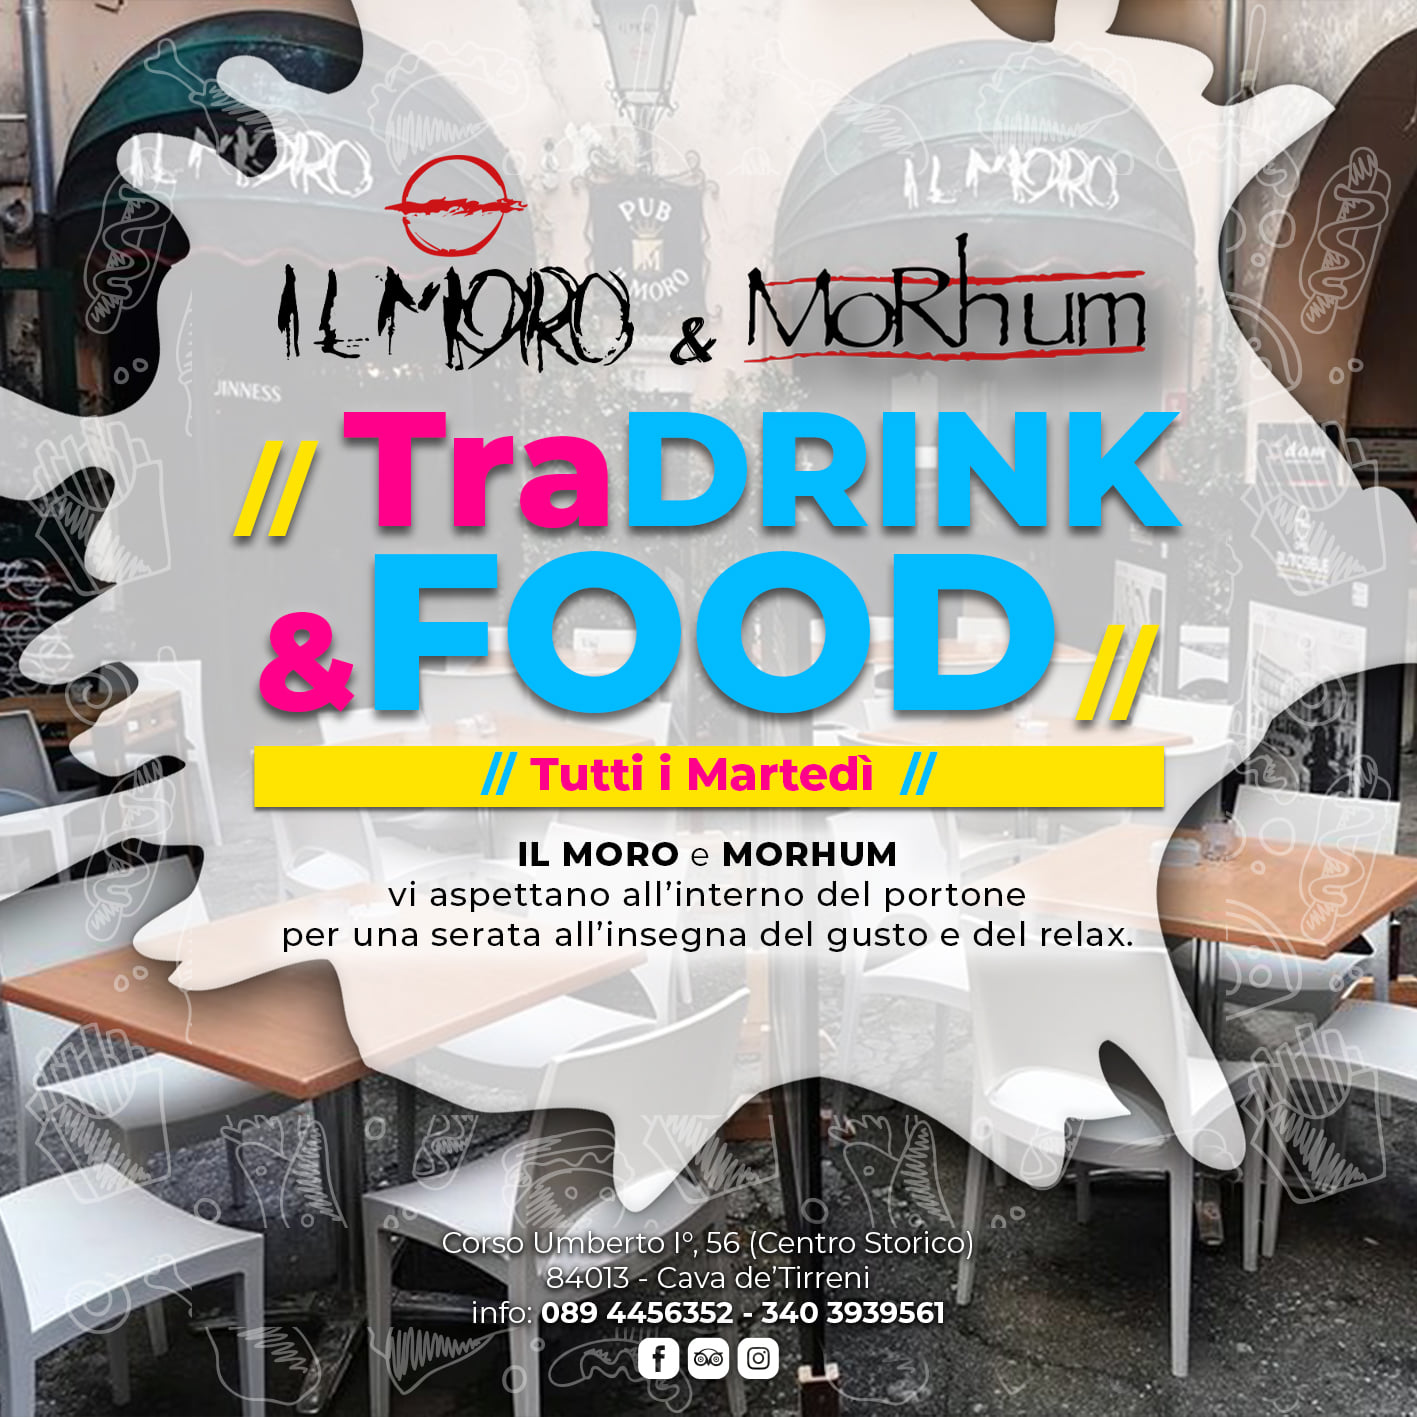 Pub Il Moro & Morhum, tutti i Martedì ti aspettano per “Tra DRINK & FOOD”